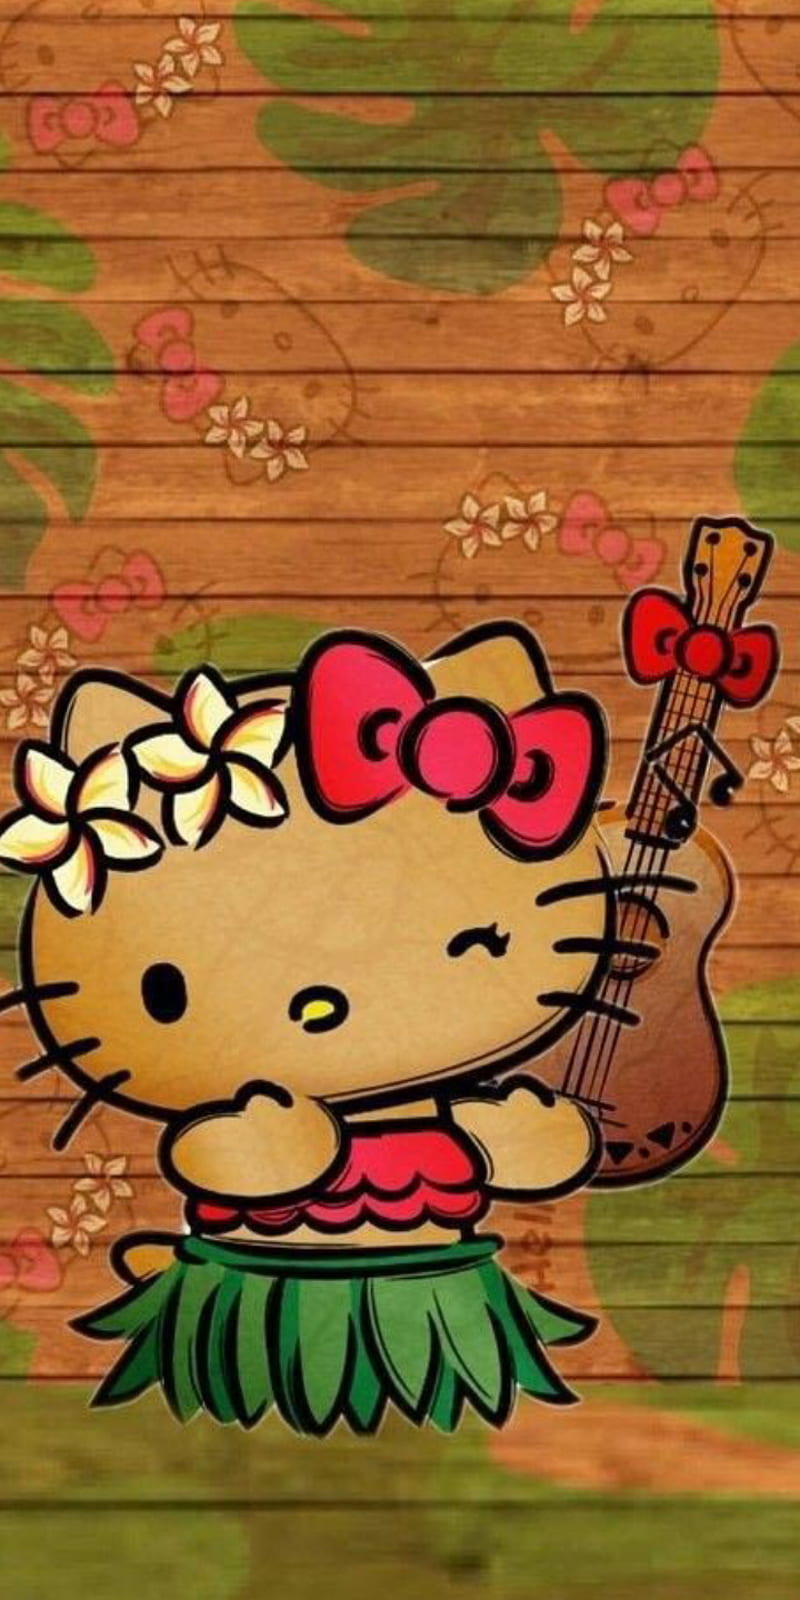 Hello Kitty  SURFS UP HAWAII  Hello kitty iphone wallpaper Hello kitty  art Hello kitty wallpaper